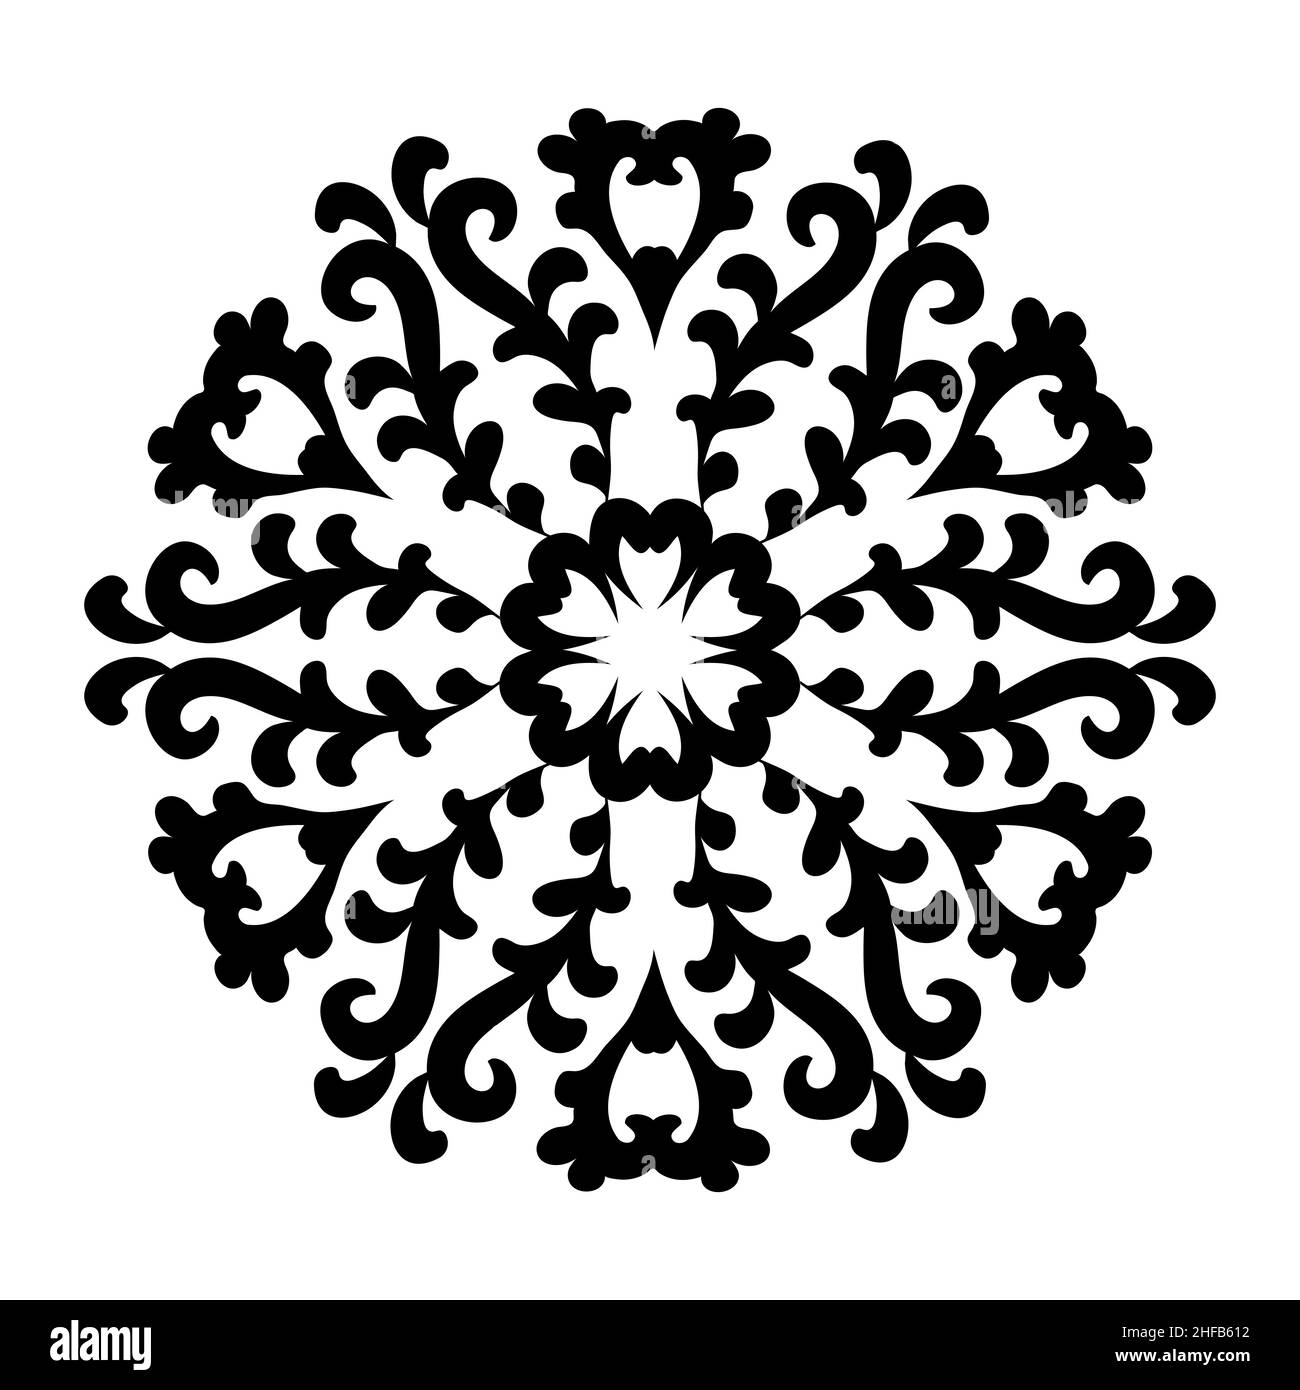 Mandala à fleurs rondes avec volutes.Décoration circulaire de style oriental.Répétition circulaire vectorielle.Noir et blanc. Illustration de Vecteur